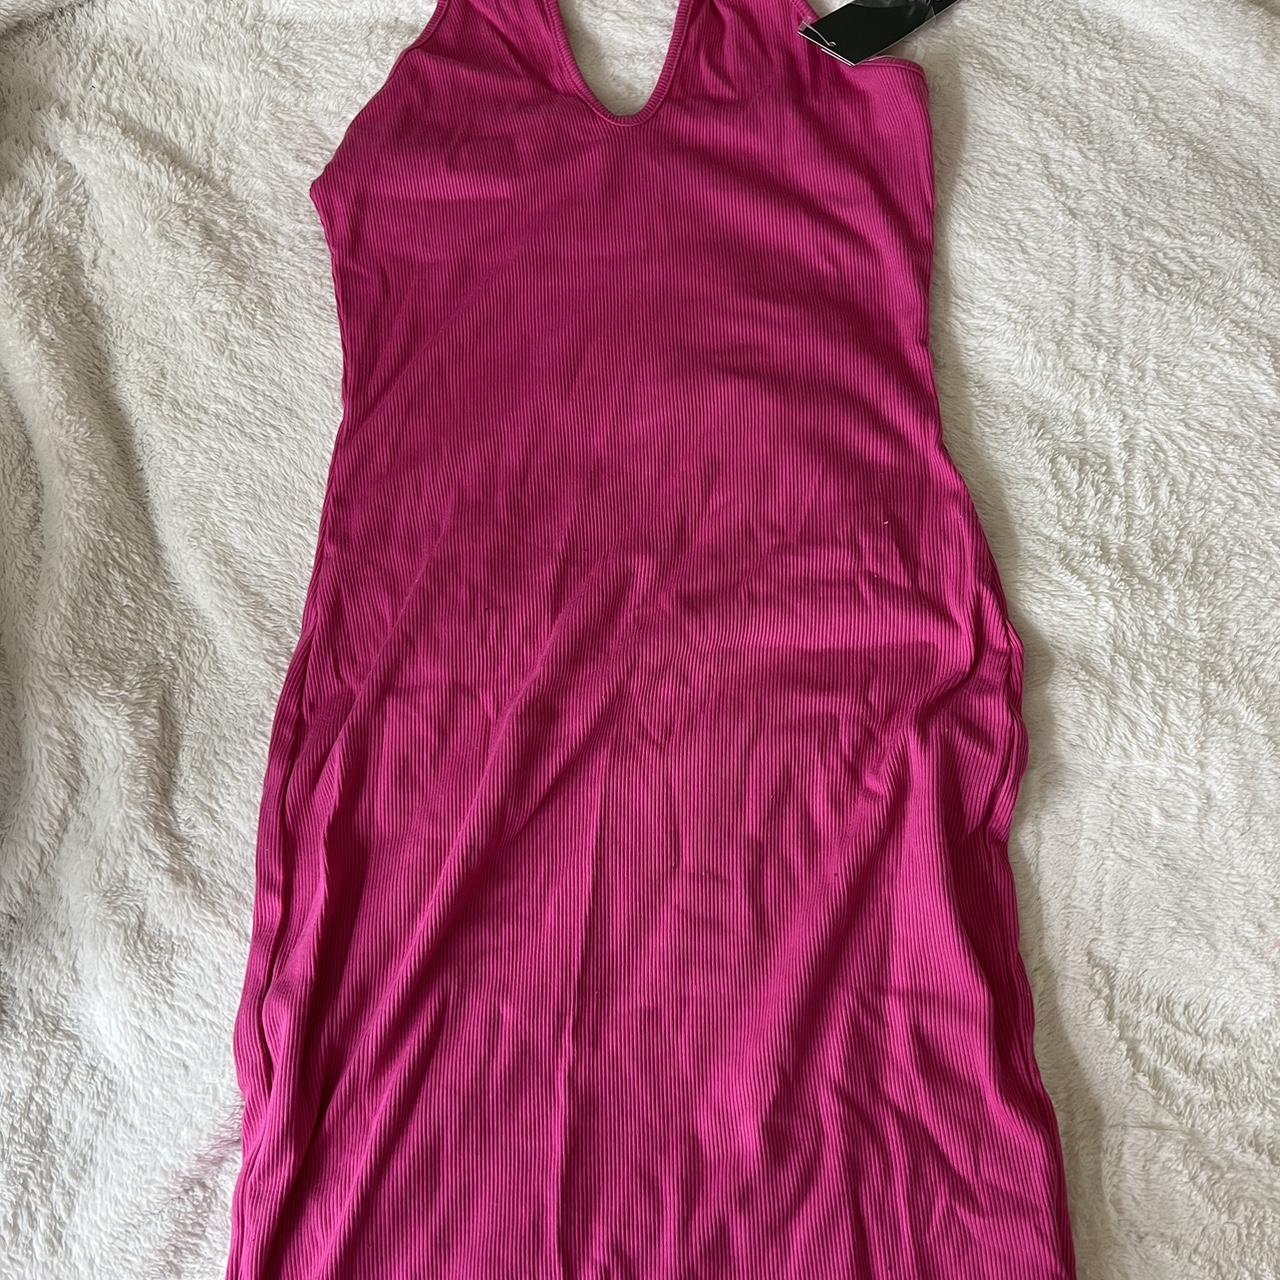 hot pink dress from target - Depop